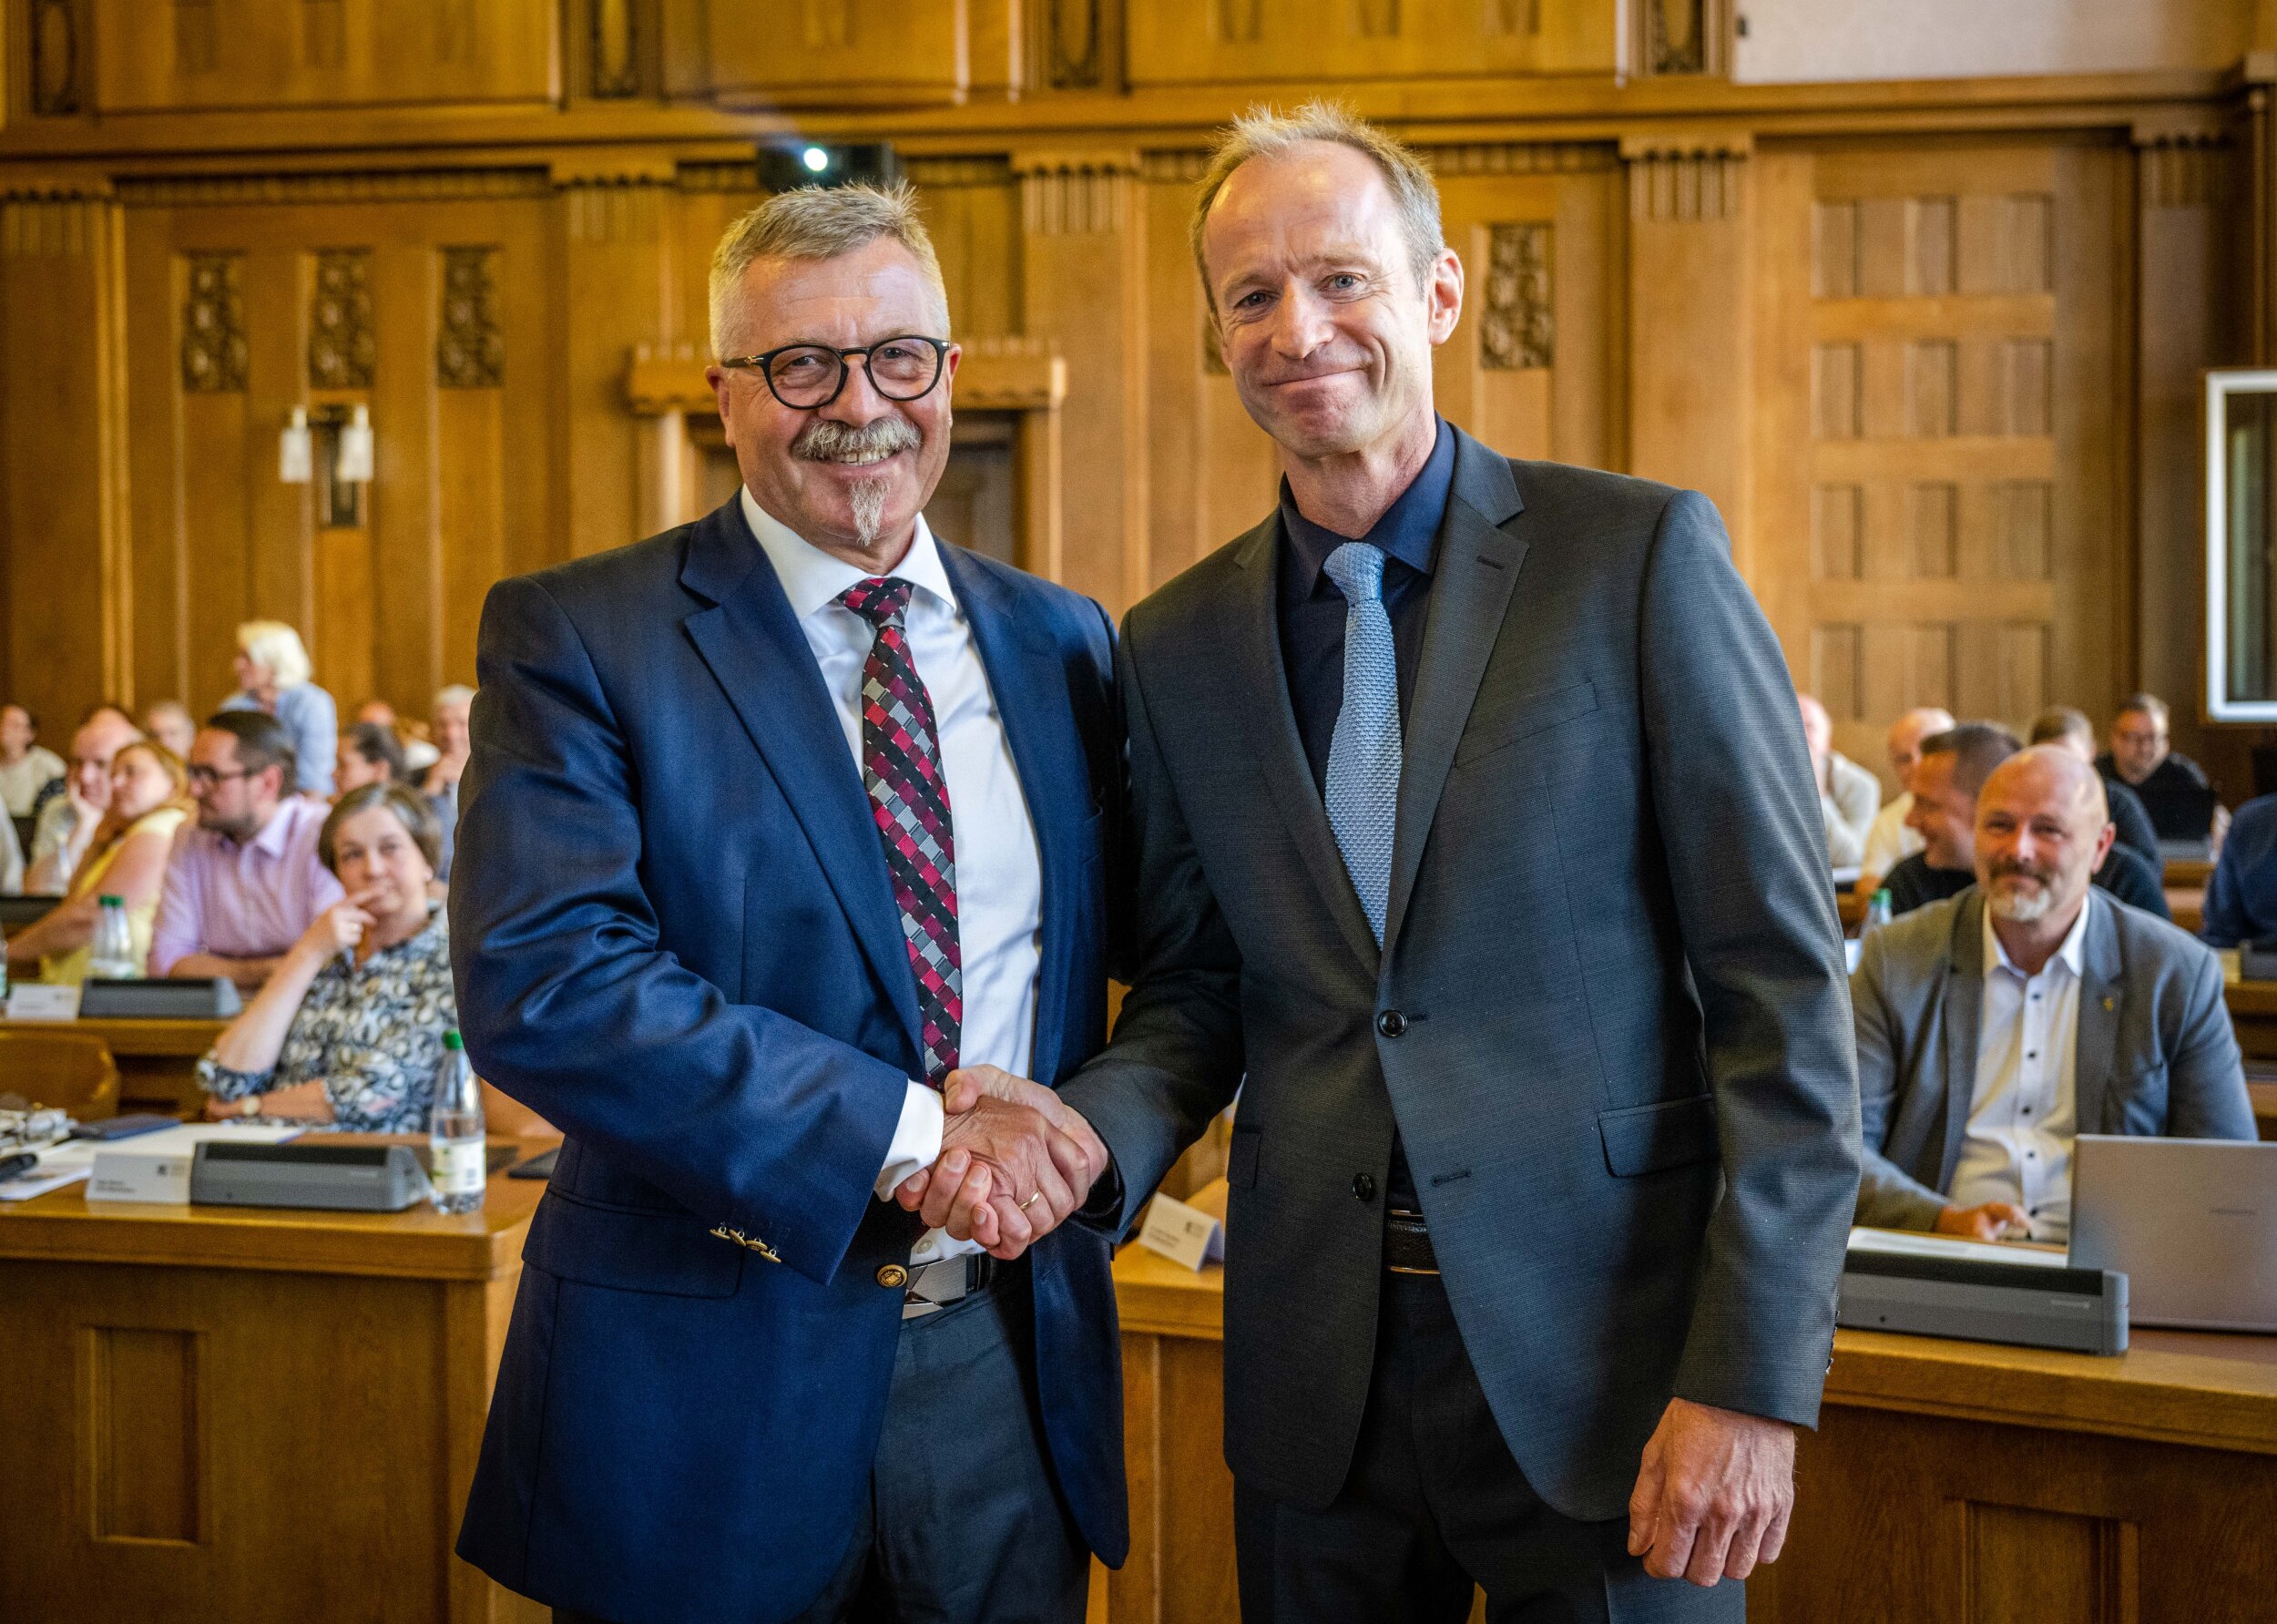 Der langjährige Ordnungsbürgermeister Miko Runkel (links) gratuliert seinem Nachfolger Knut Kunze. Er trat das Amt als Bürgermeister für Recht, Sicherheit und Umweltschutz am 1. August an.